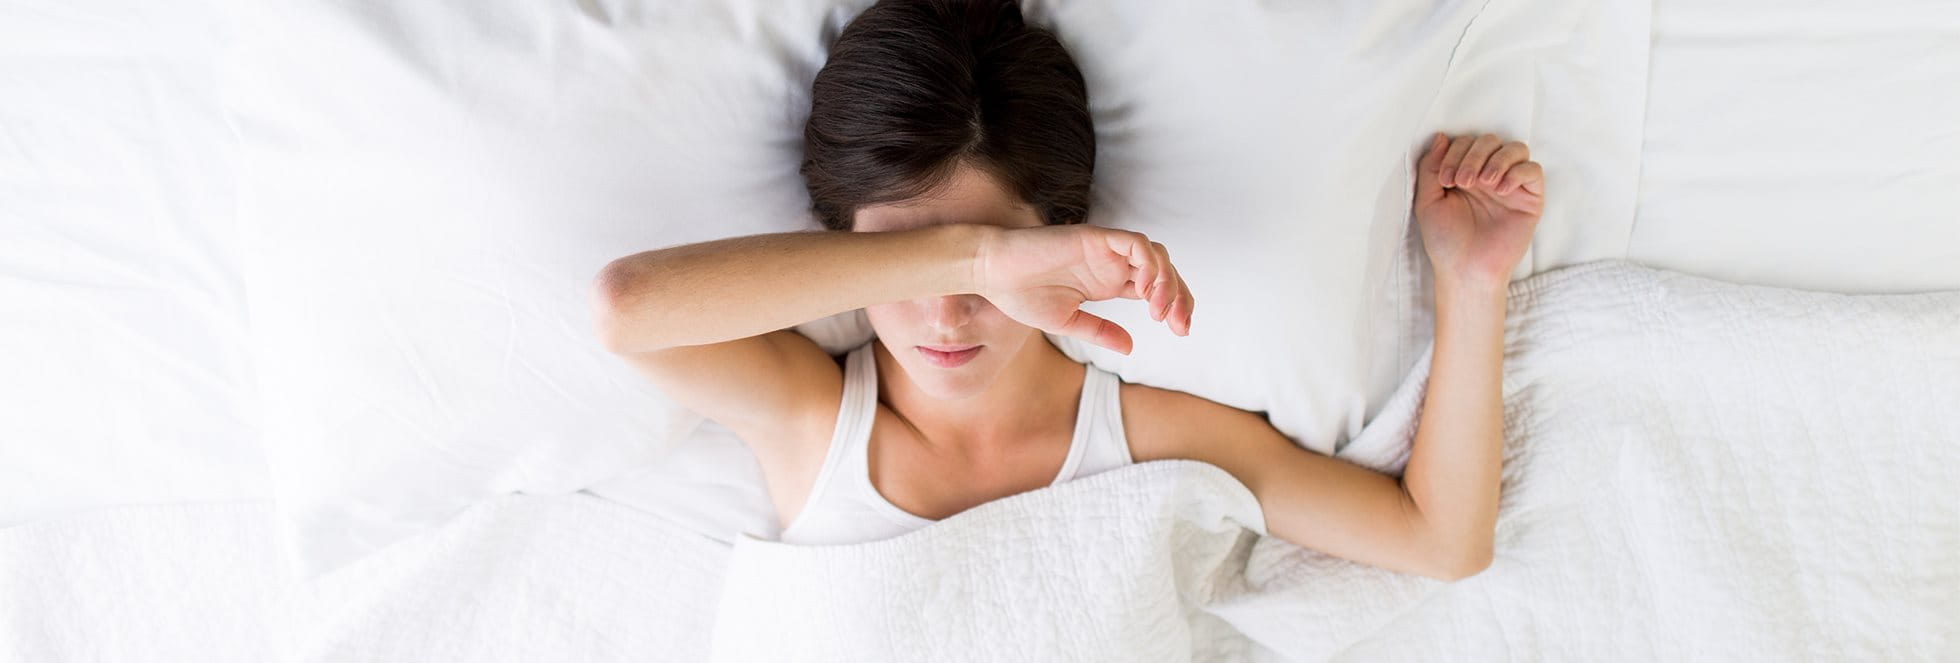 Ako atopická dermatitída ovplyvňuje spánok a kvalitu života